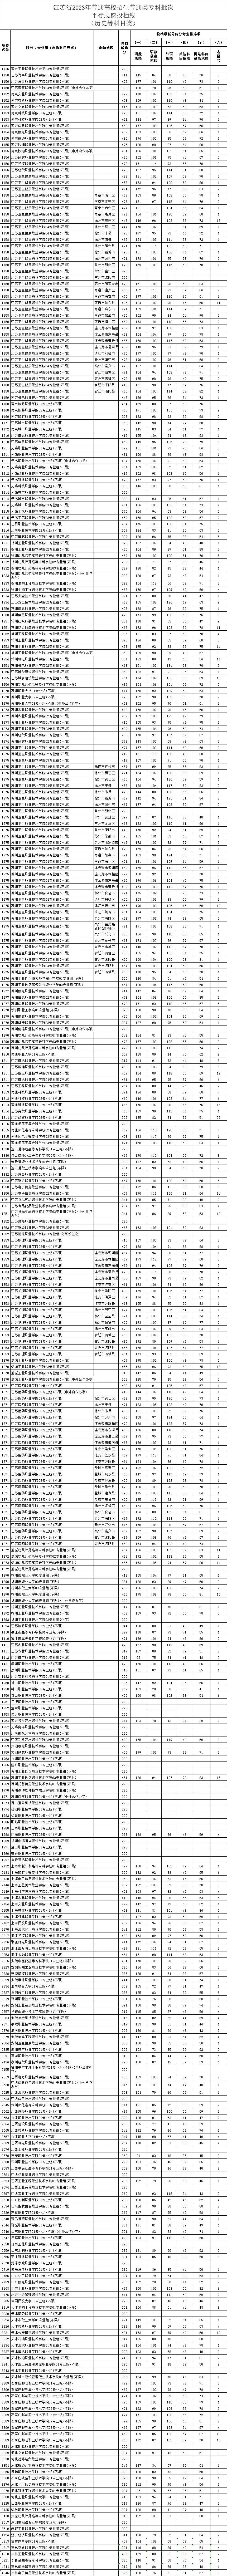 江苏省2023年普通高校招生普通类专科批次平行志愿投档线